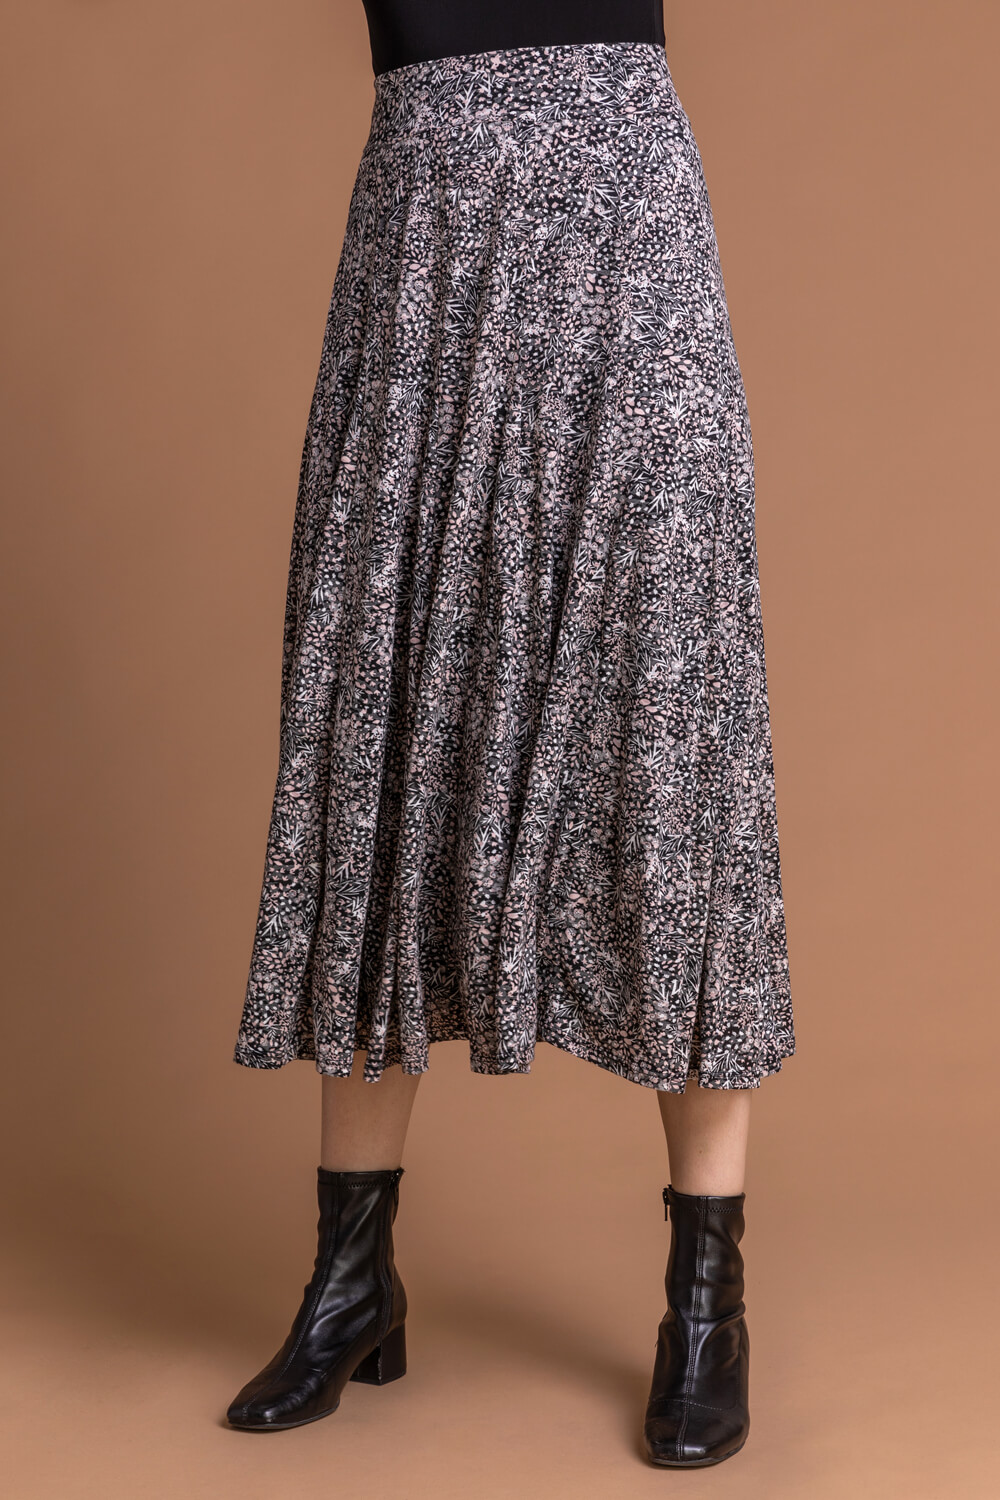 Floral Print Burnout Midi Skirt in Grey - Roman Originals UK